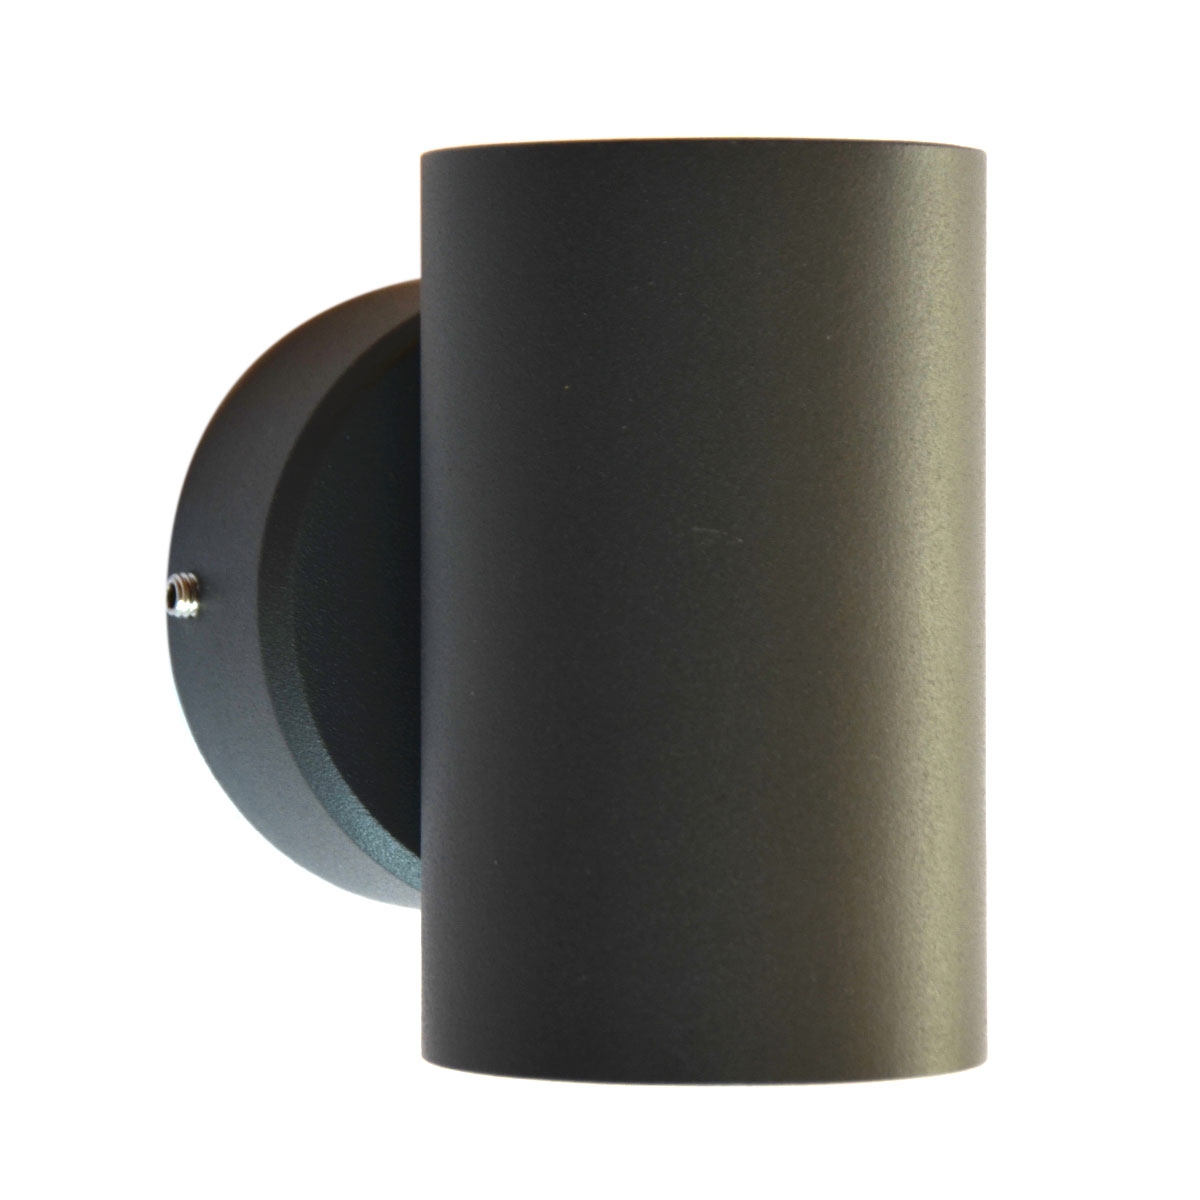 الأضاءة داخلية و خارجية - موفر للطاقة اللون الخارجي أسود 2213-LED Clear Glass 